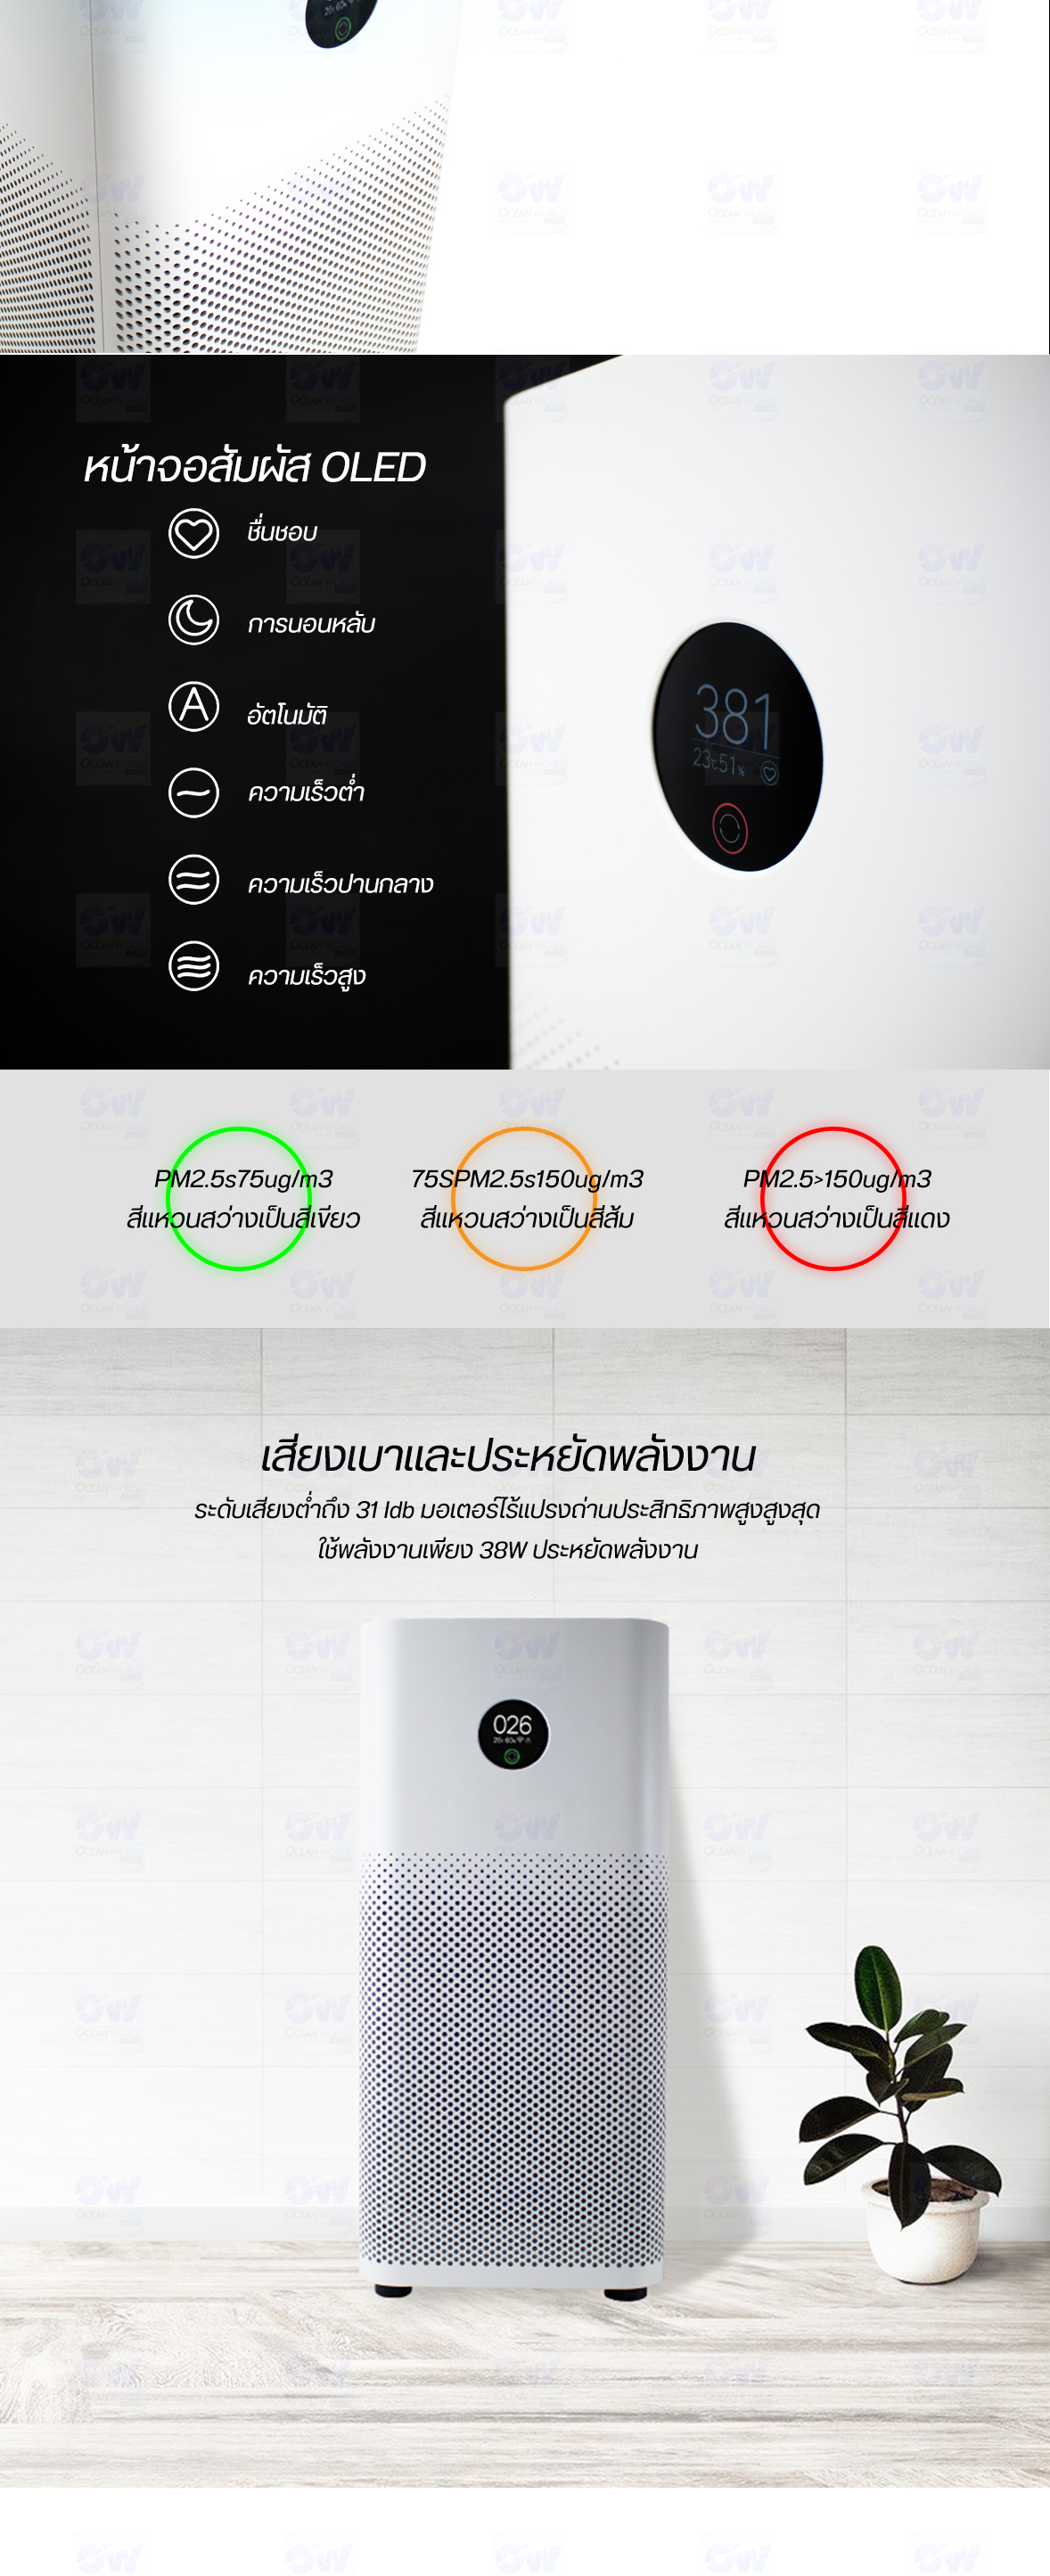 ข้อมูลเพิ่มเติมของ Xiaomiส่ง Mi Air Per 4 Lite / Air Per 3C / Per 3H (มีไส้กรองในตัว) มีไฟบอกสถานะ ใส้กรองที่มีประสิทธิภาพสูง เครื่องฟอกอากาศ สามารถเชื่อมต่อAPP กรองฟอร์มาลดีไฮด์ได้อย่างรวดเร็ว แบคทีเรีย สารก่อภูมิแพ้ ฝุ่น PM2.5 เครื่องฟอกอากาศในบ้าน